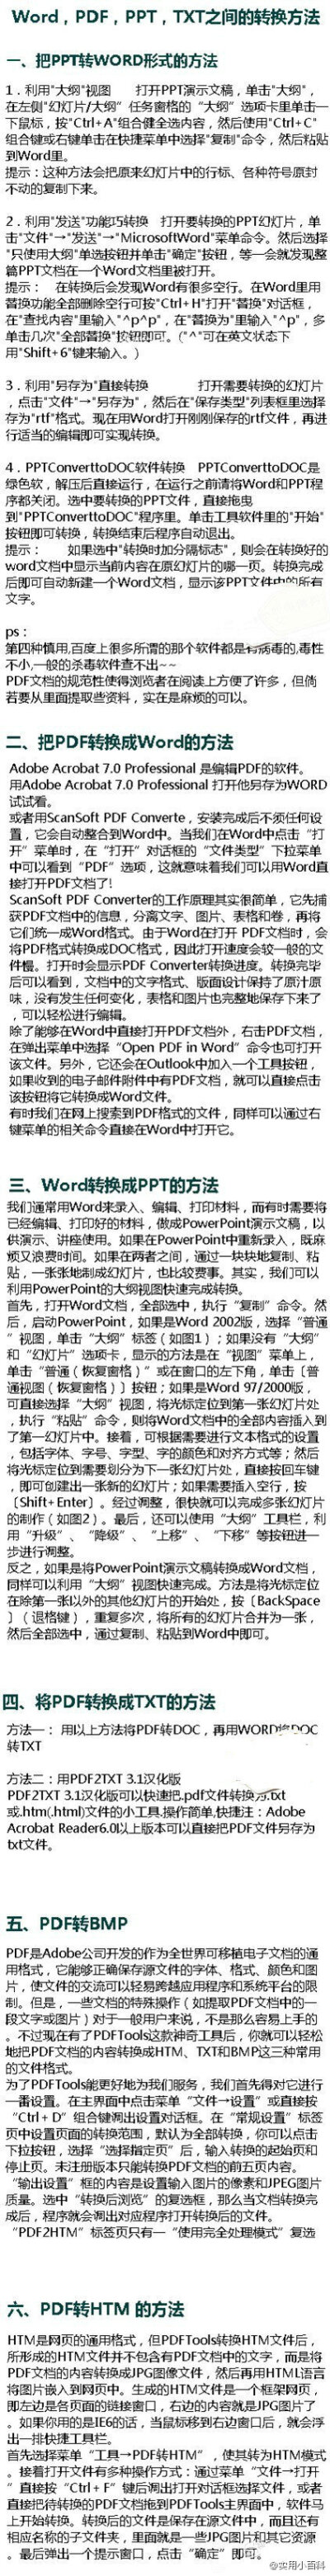 【技术贴】Word，PDF，PPT，TXT之间的转换方法。实用，推荐给大家！@实用小百科（转）